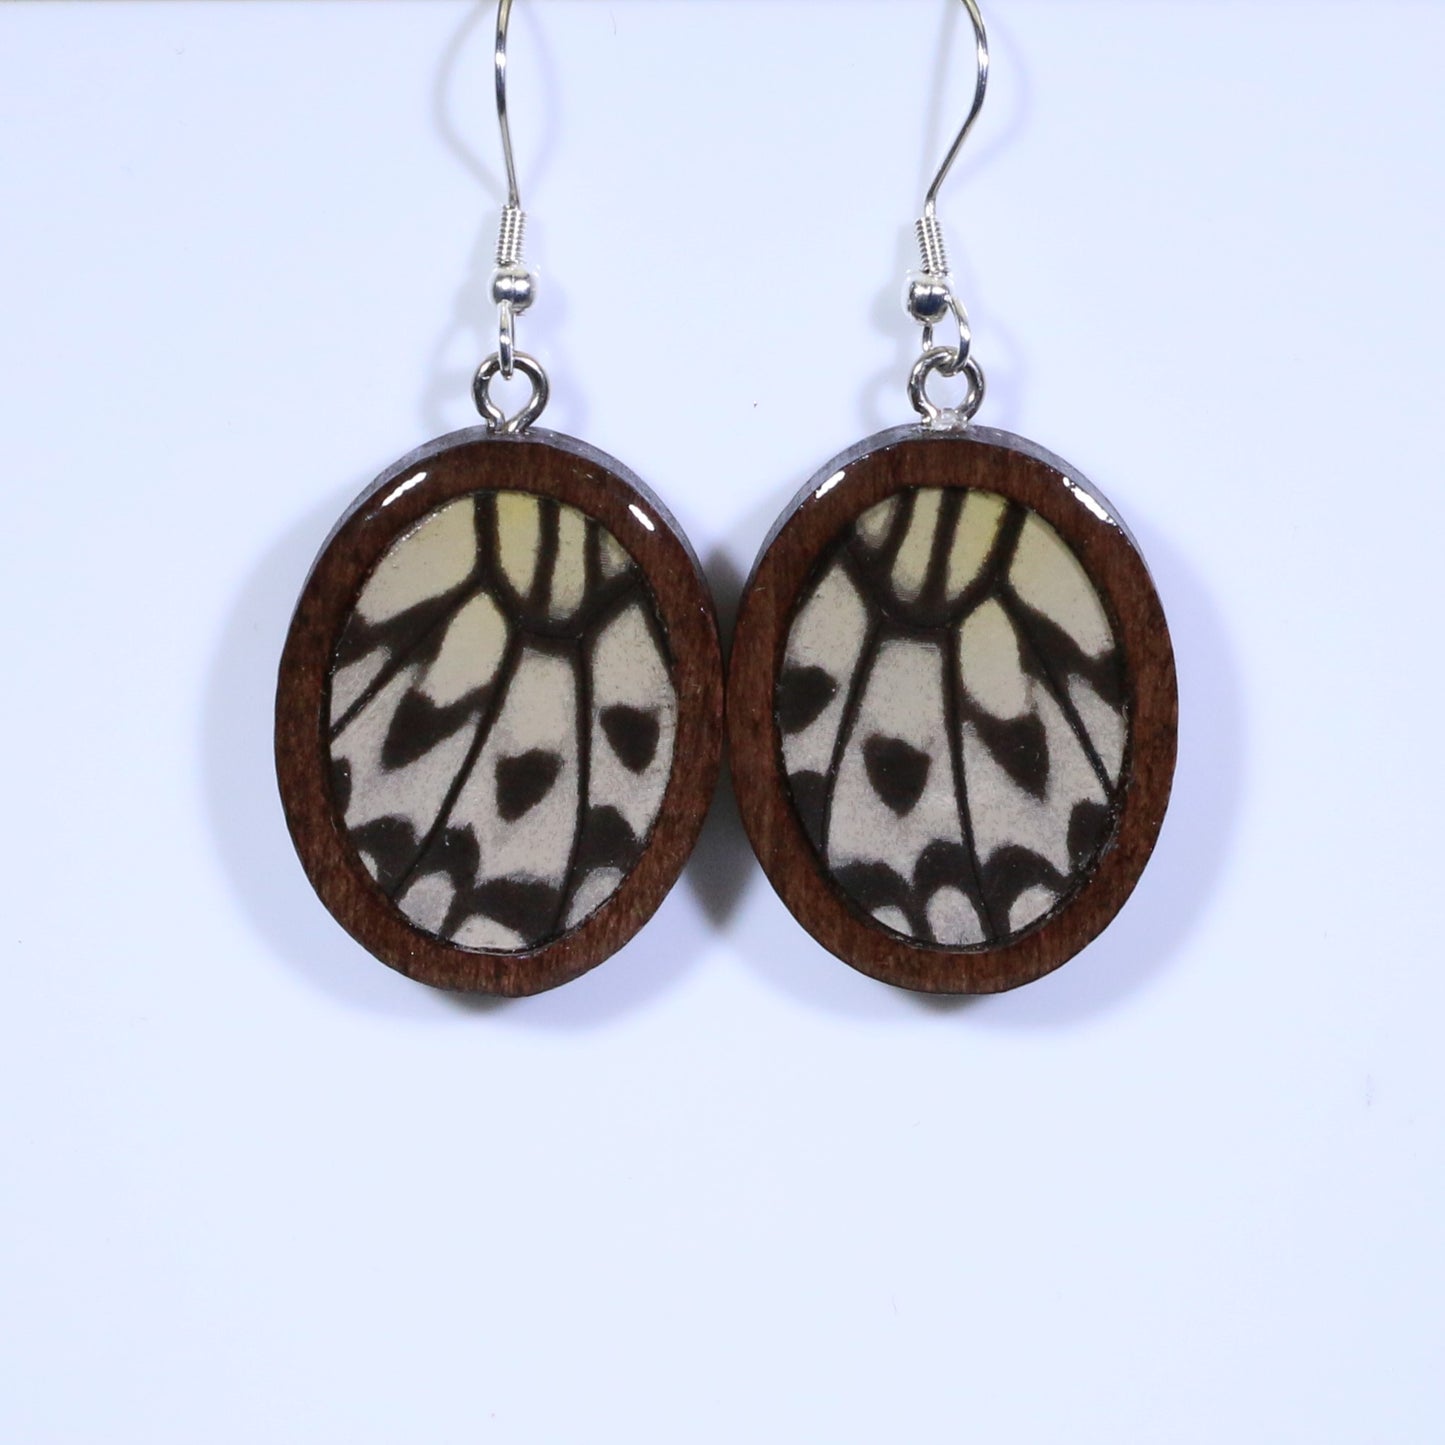 51709 - Real Butterfly Wing Jewelry - Earrings - Medium - Dark Wood - Oval - Plain - Paper Kite